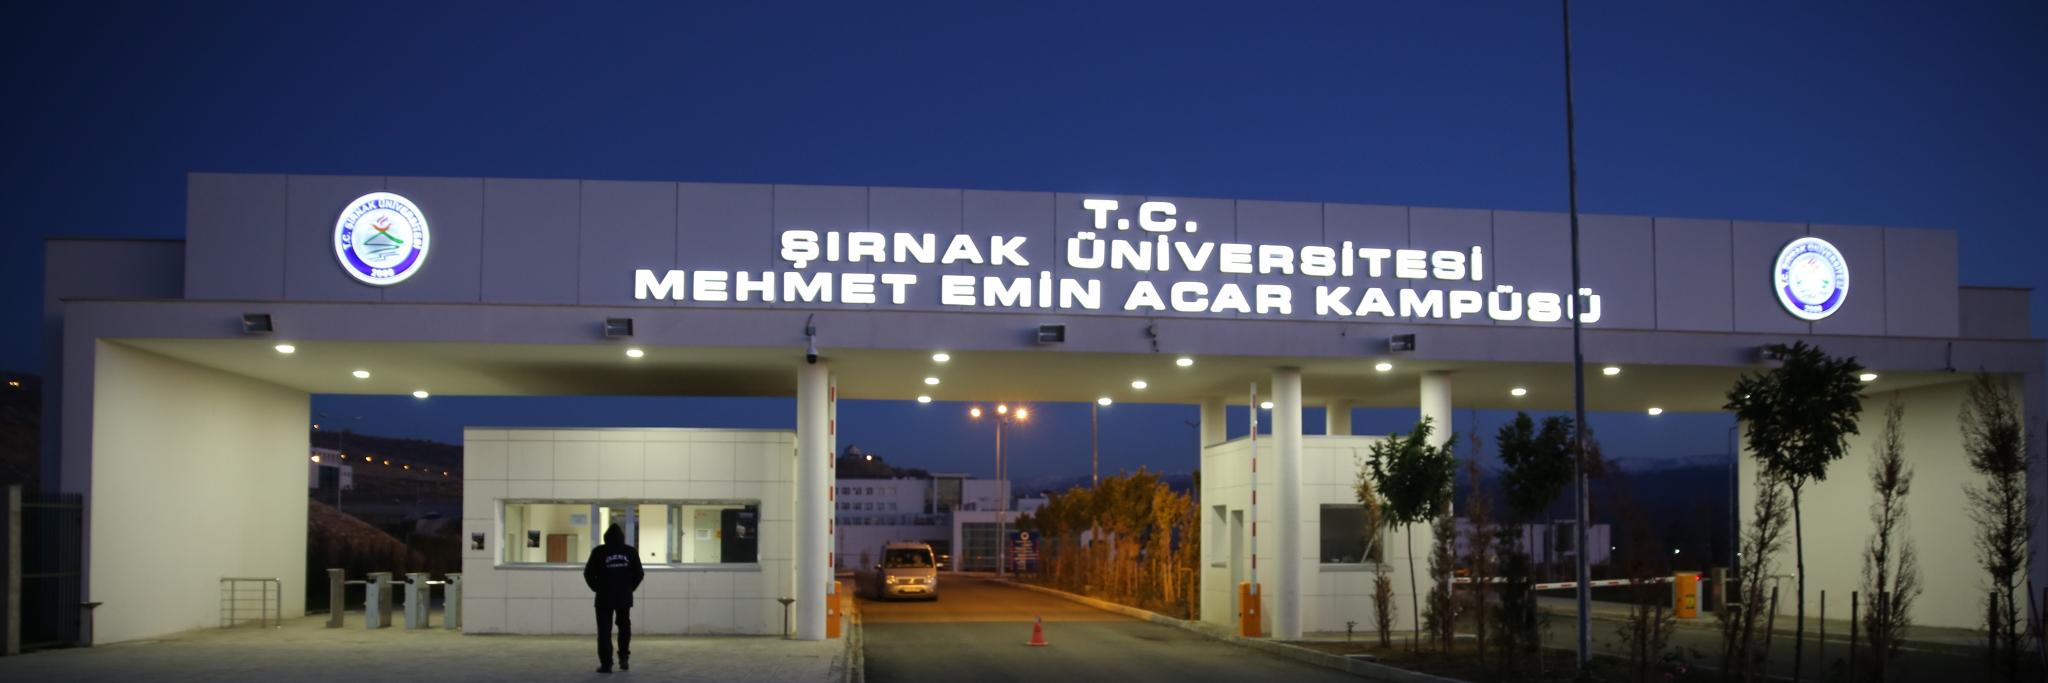 Sirnak Üniversitesi's official Twitter account